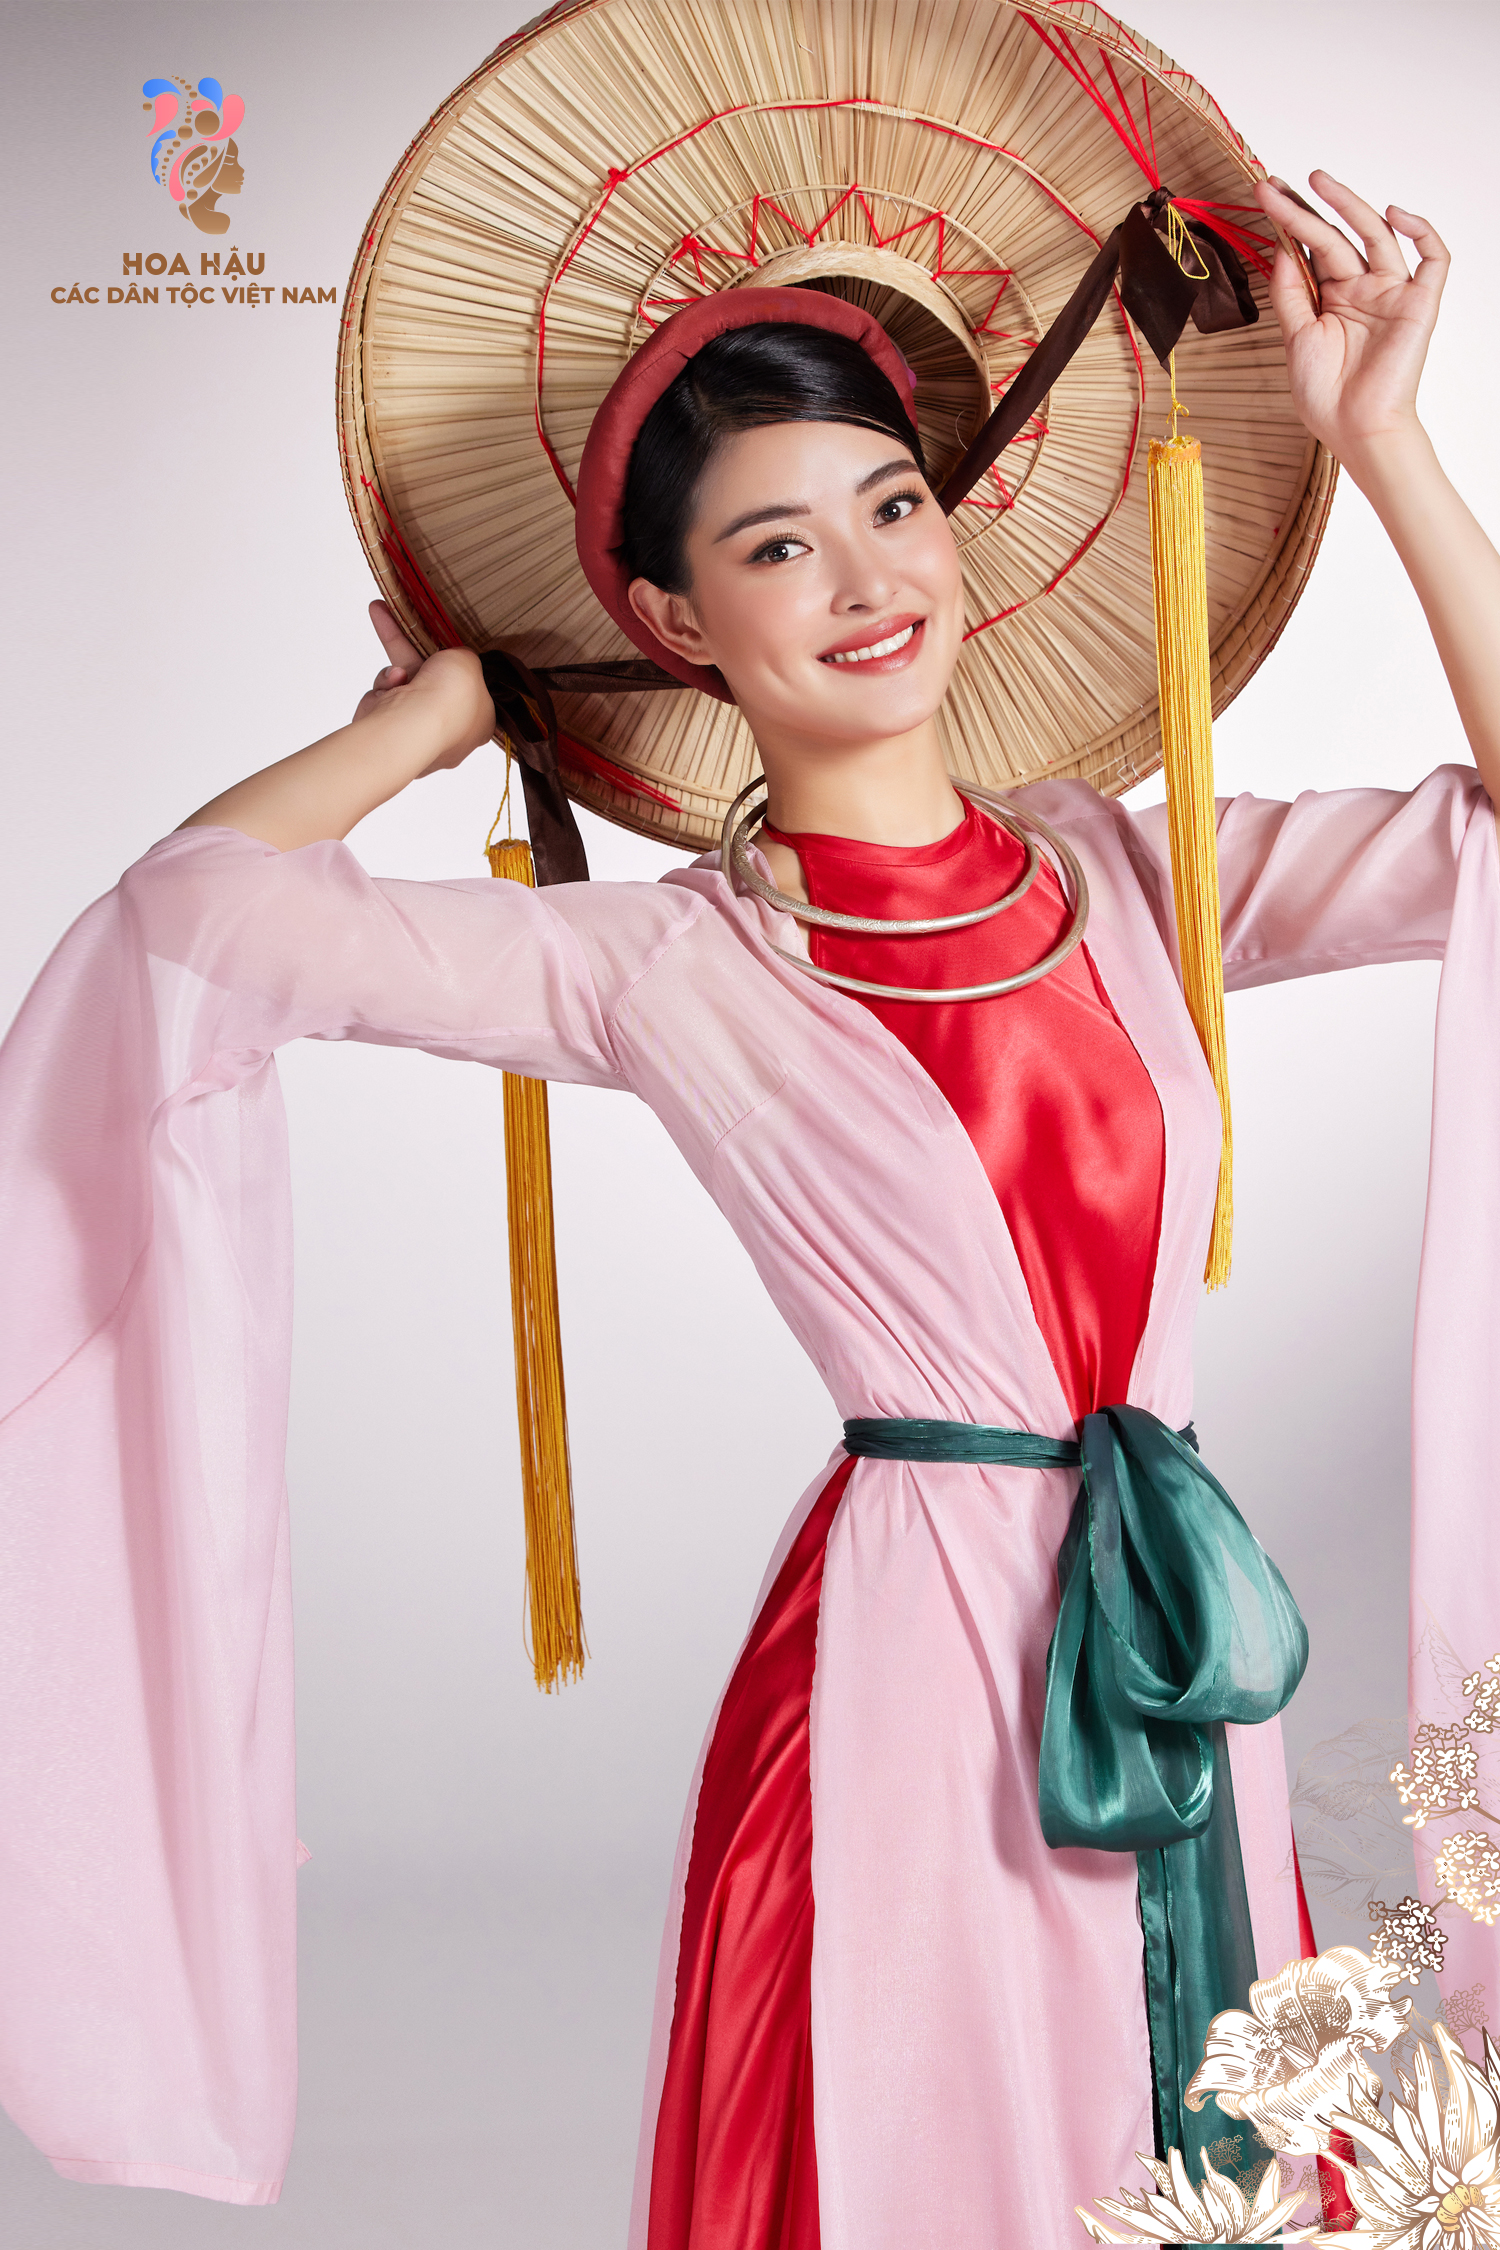 30 thí sinh Hoa hậu các dân tộc Việt Nam duyên dáng trong trang phục truyền thống - Ảnh 12.